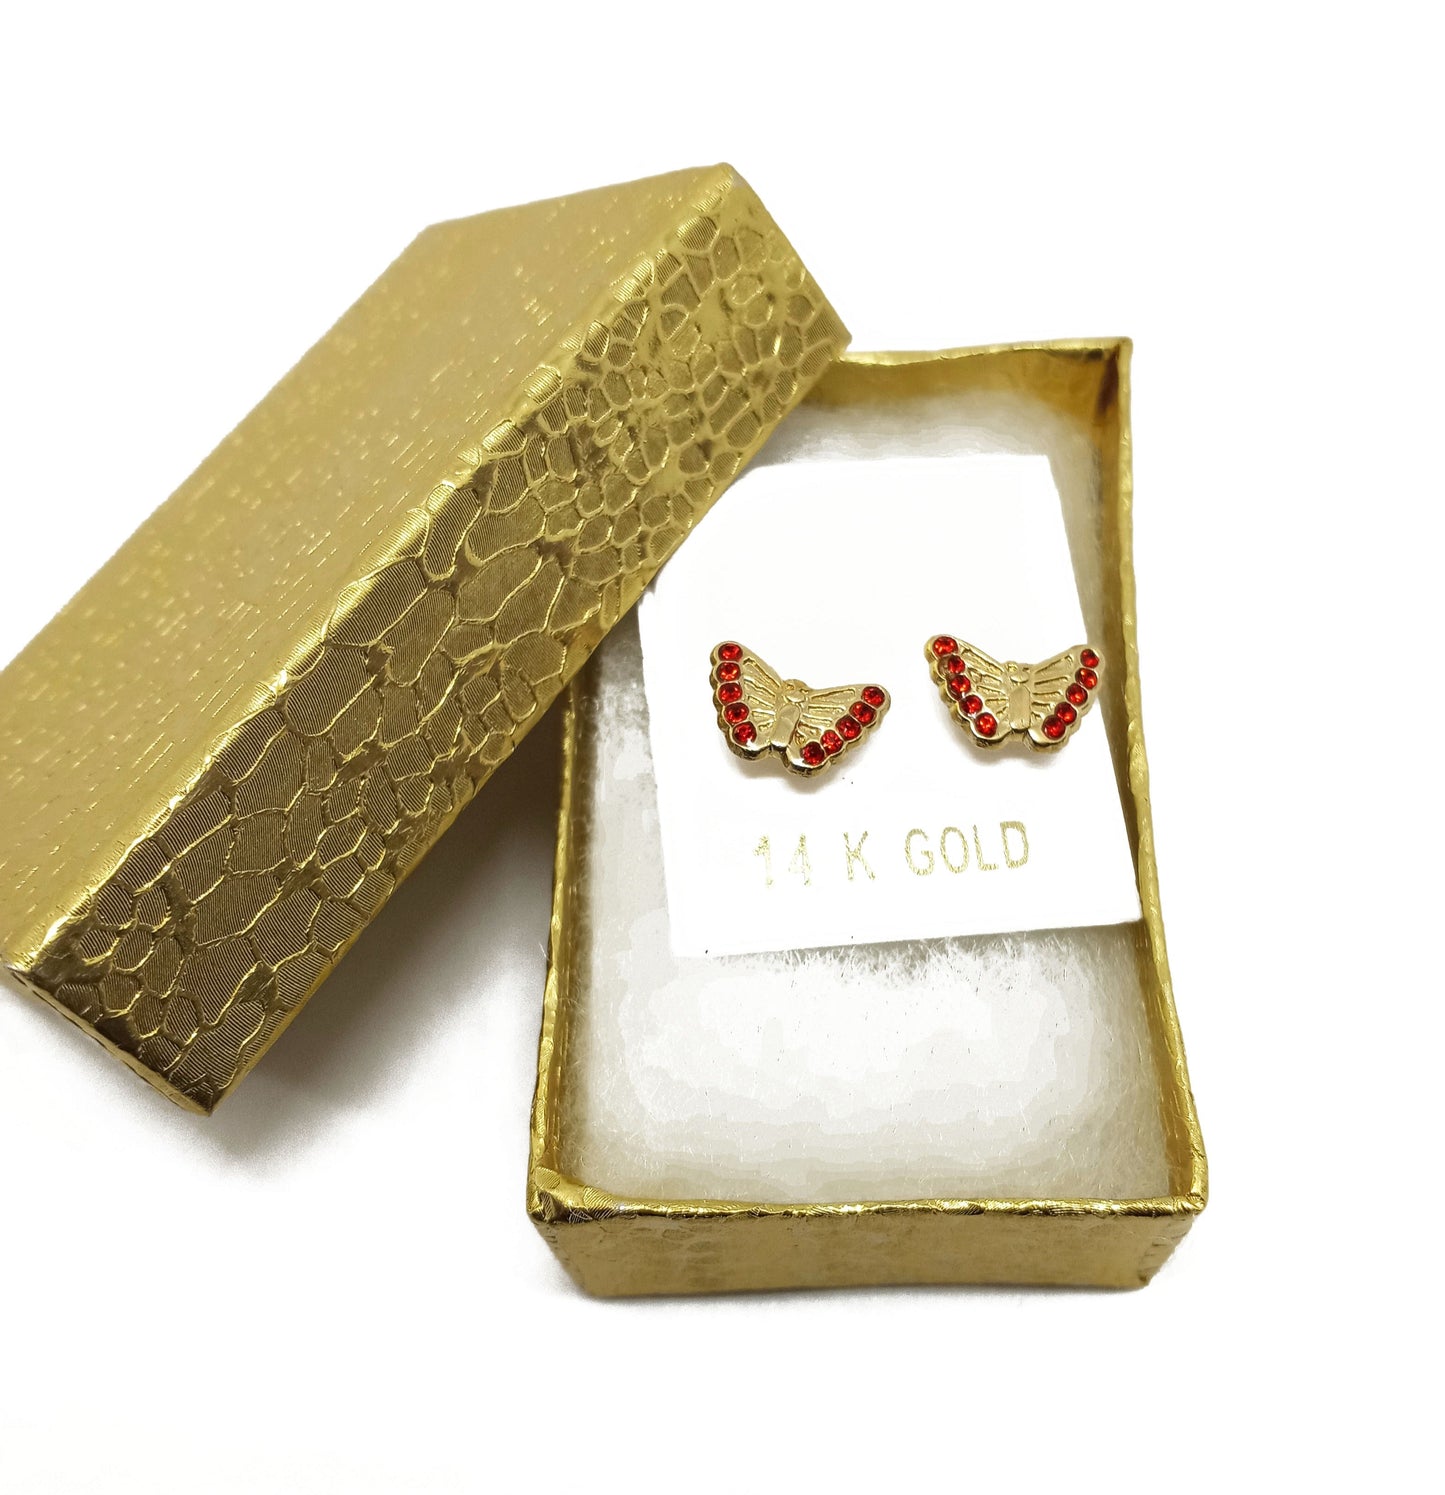 14K Yellow Gold Butterfly Stud Earrings